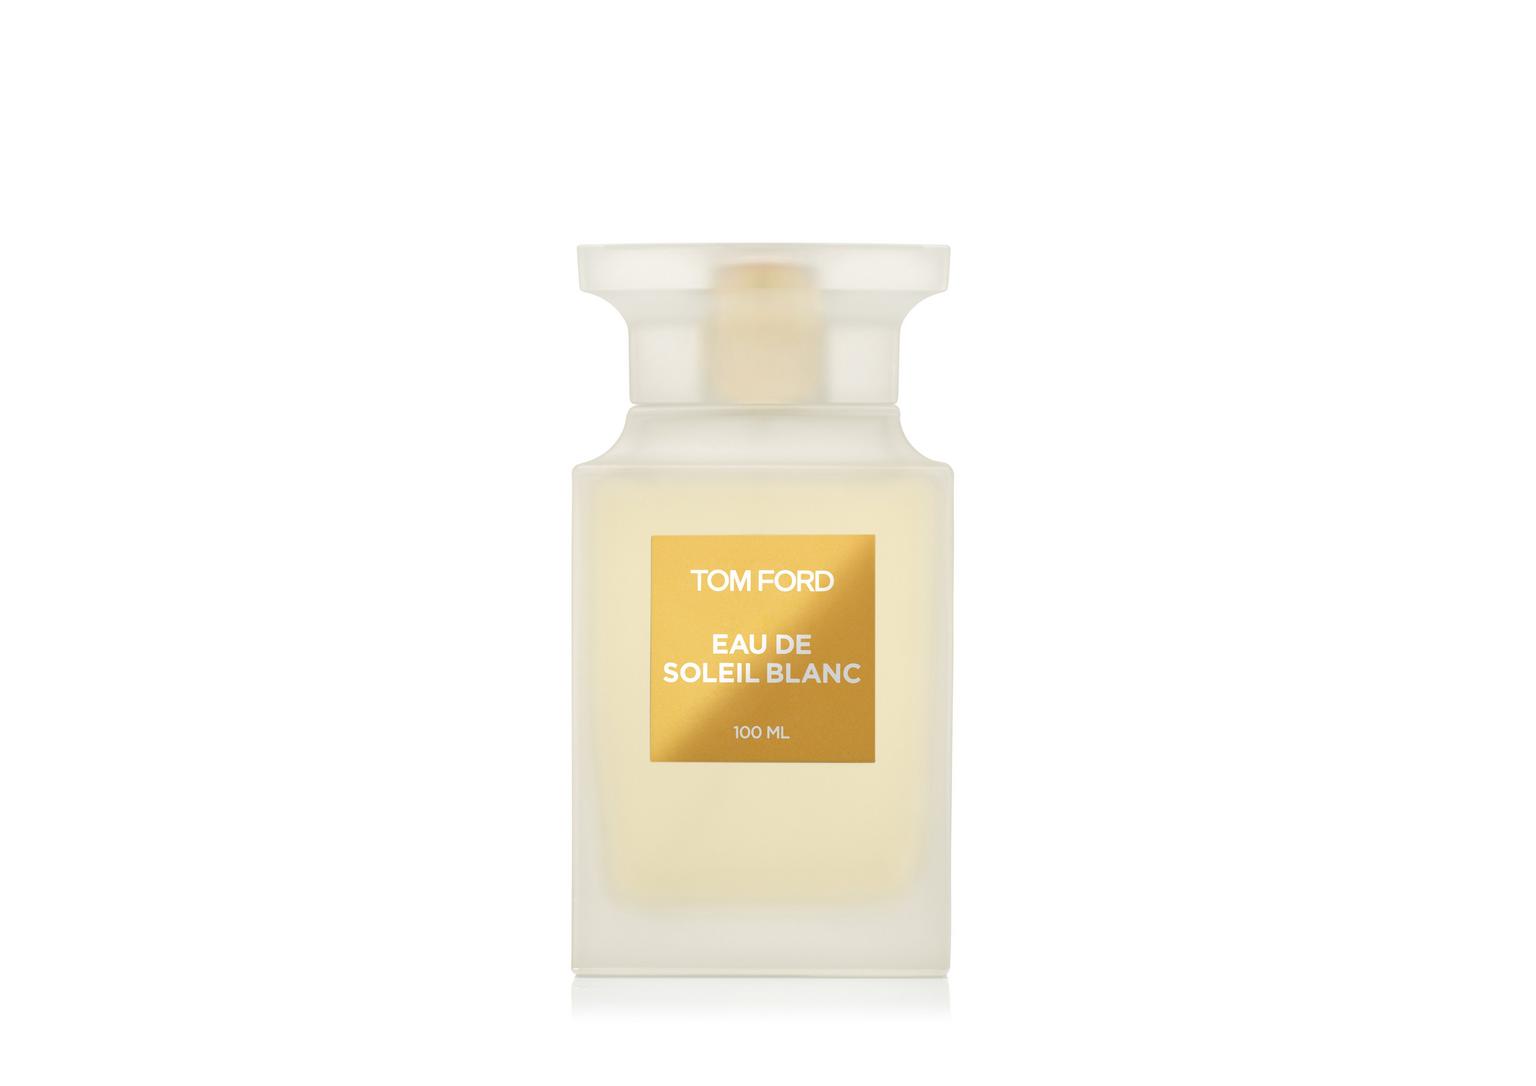 Eau de Soleil Blanc Tom Ford perfume - a novo fragrância Compartilhável